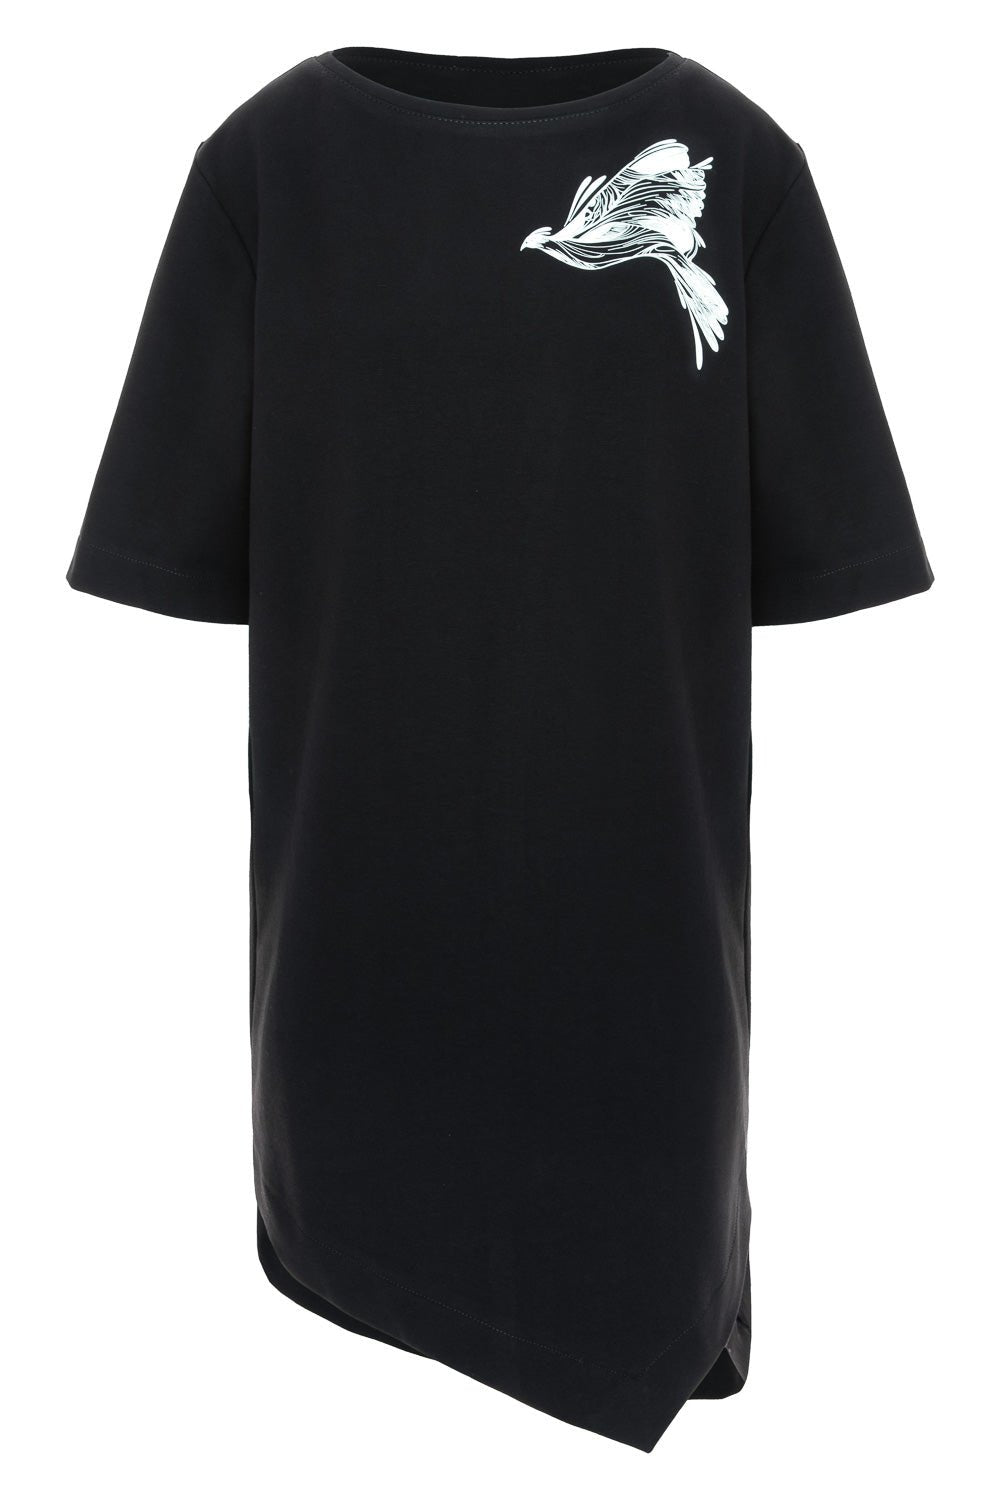 Rochie-tricou damă, neagră, imprimeu Tweetie, bumbac premium, croială lejeră, detalii moderne guler larg, tăietură asimetrică